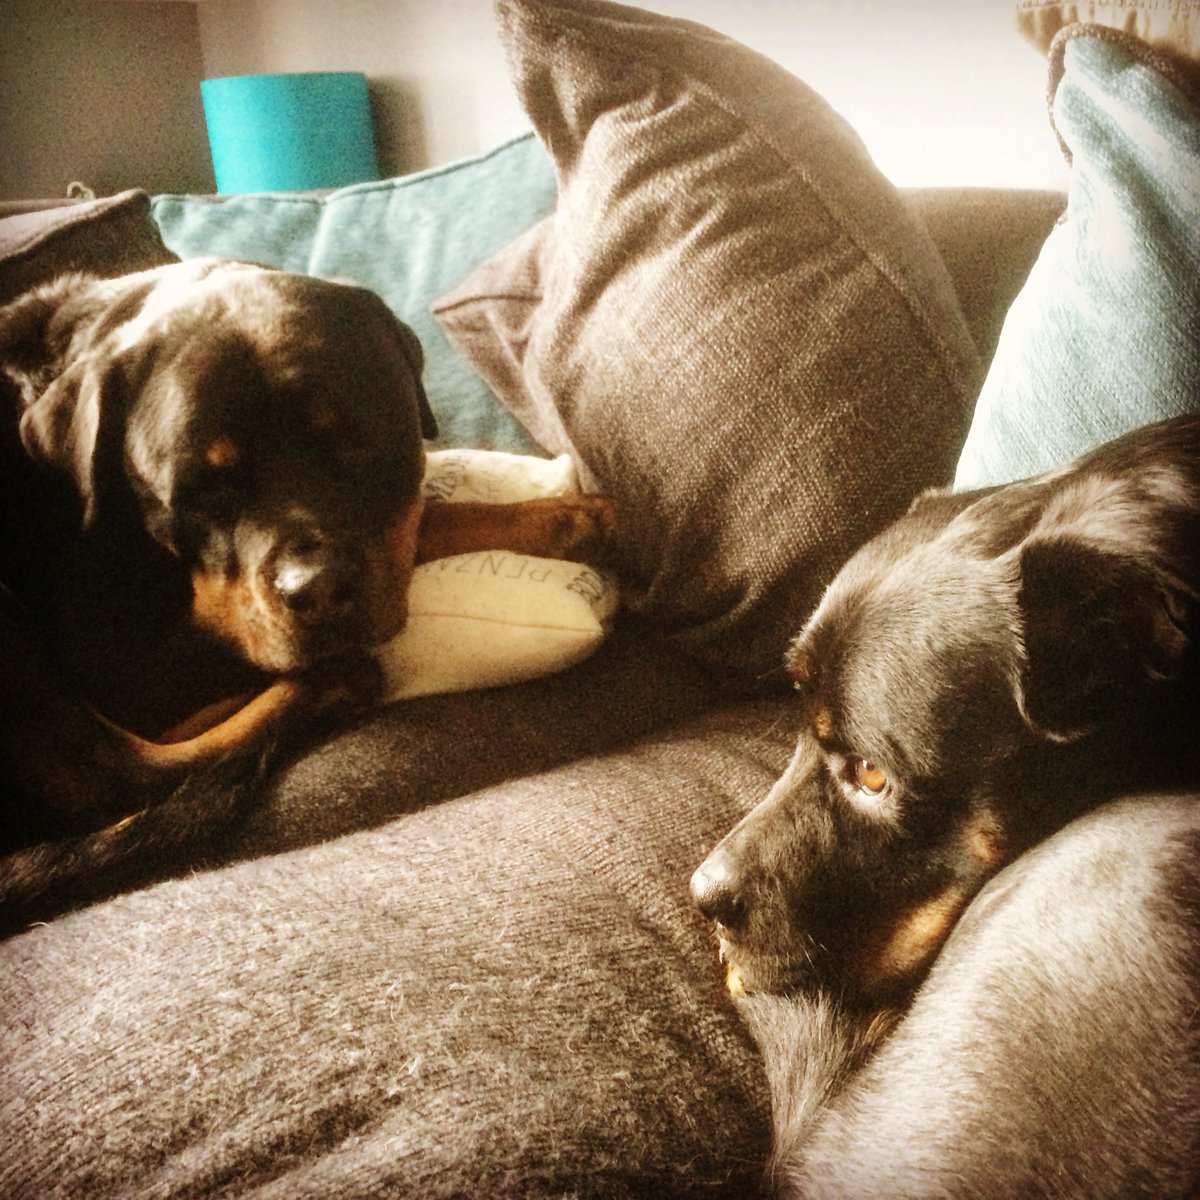 Kaiser and I are having a sofa day. #sofasunday #sundayfunday #relaxingsunday #relaxeddog #rescuedog #sofadog #rottweiler #rottweilers_of_instagram #rottiefanclub #petsofinstagram #dogoftheday #DogsofTwitter